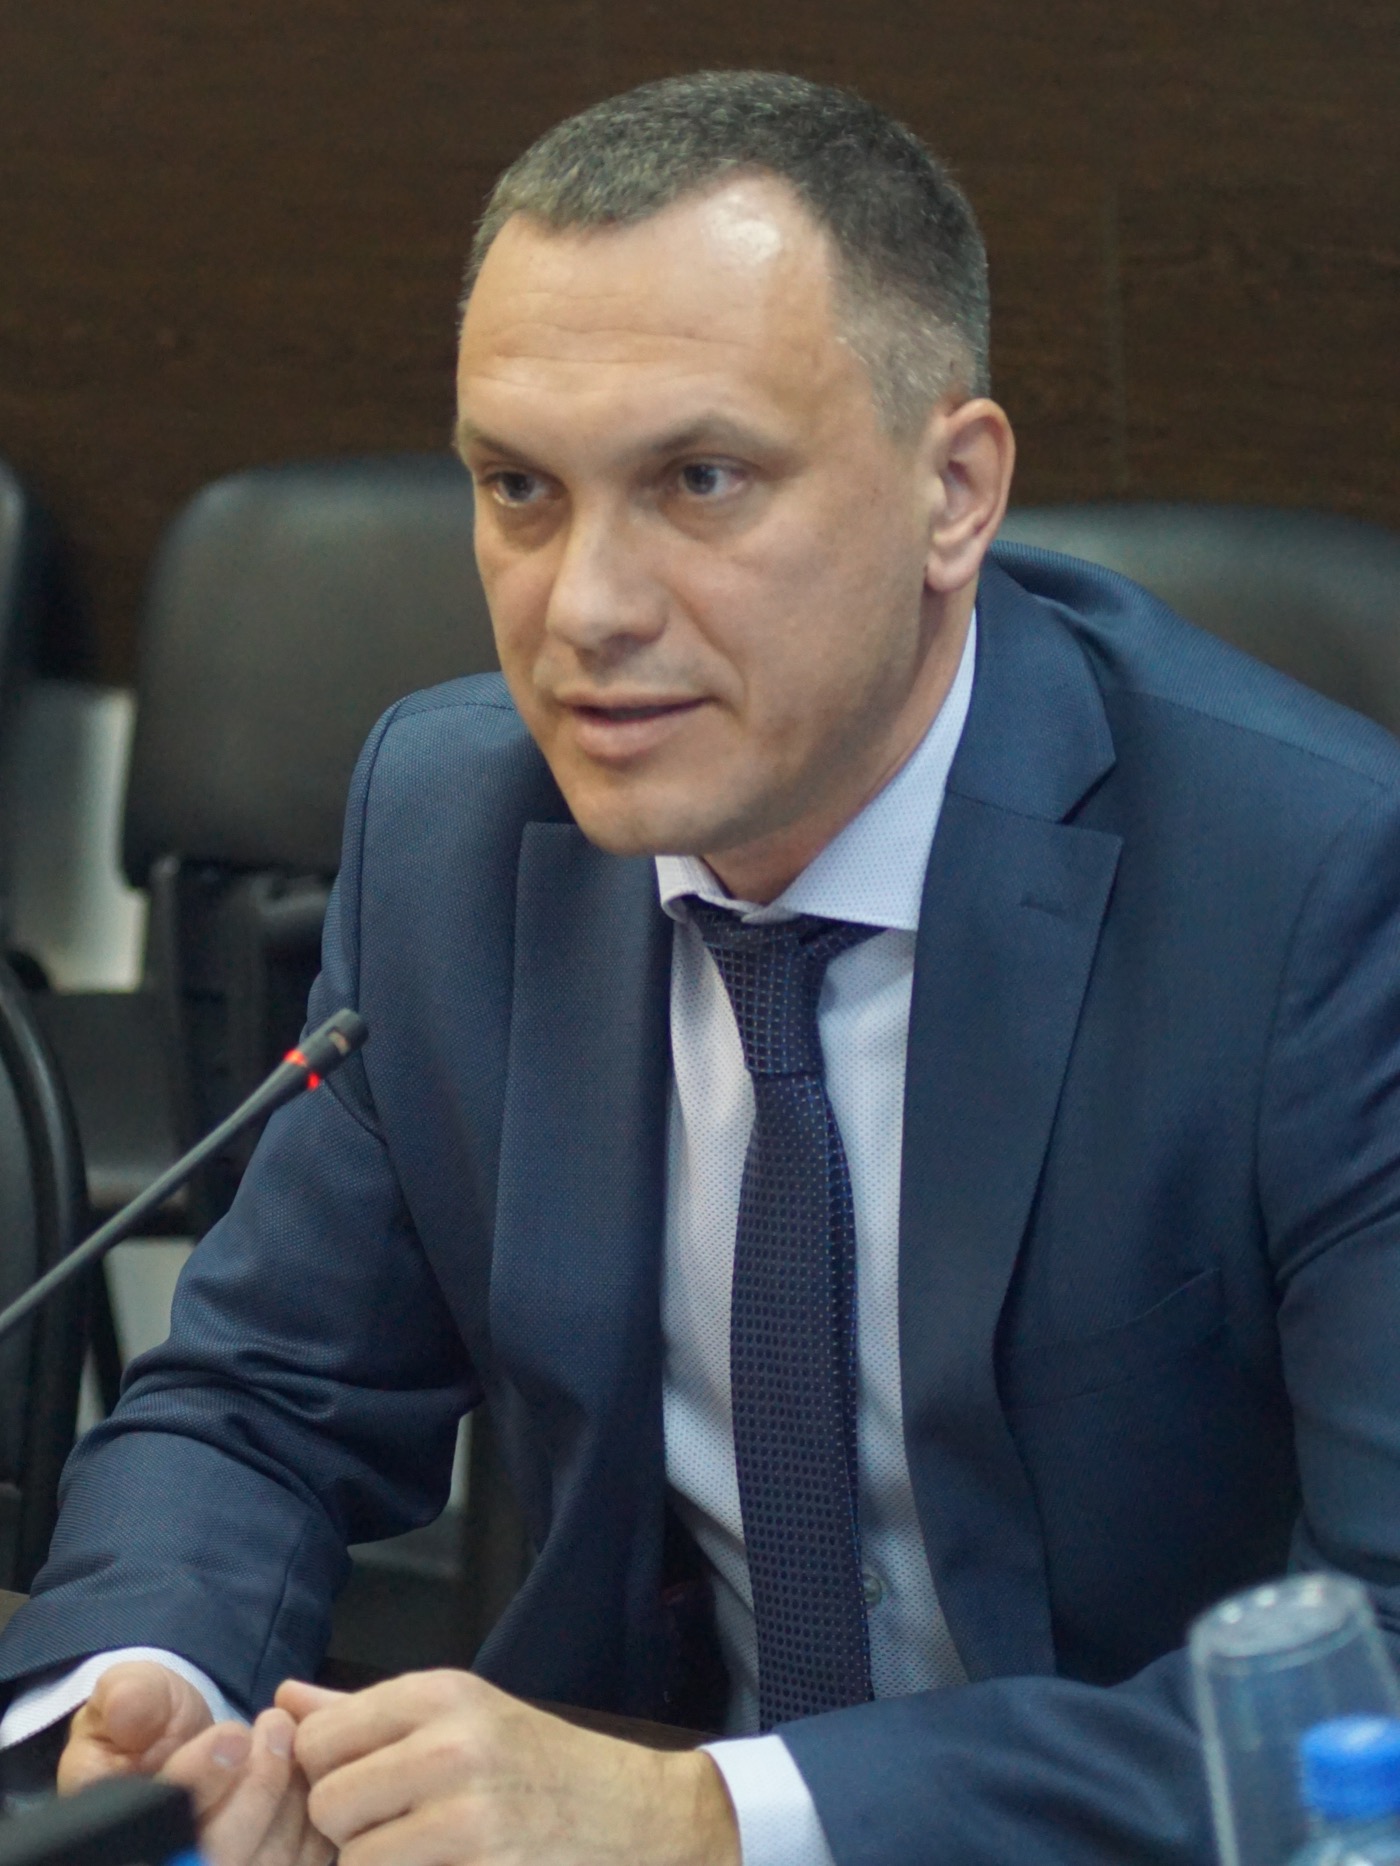 Кузьмин Сергей Петрович – Управляющий директор Управления розничных продаж и обслуживания РНКБ Банка